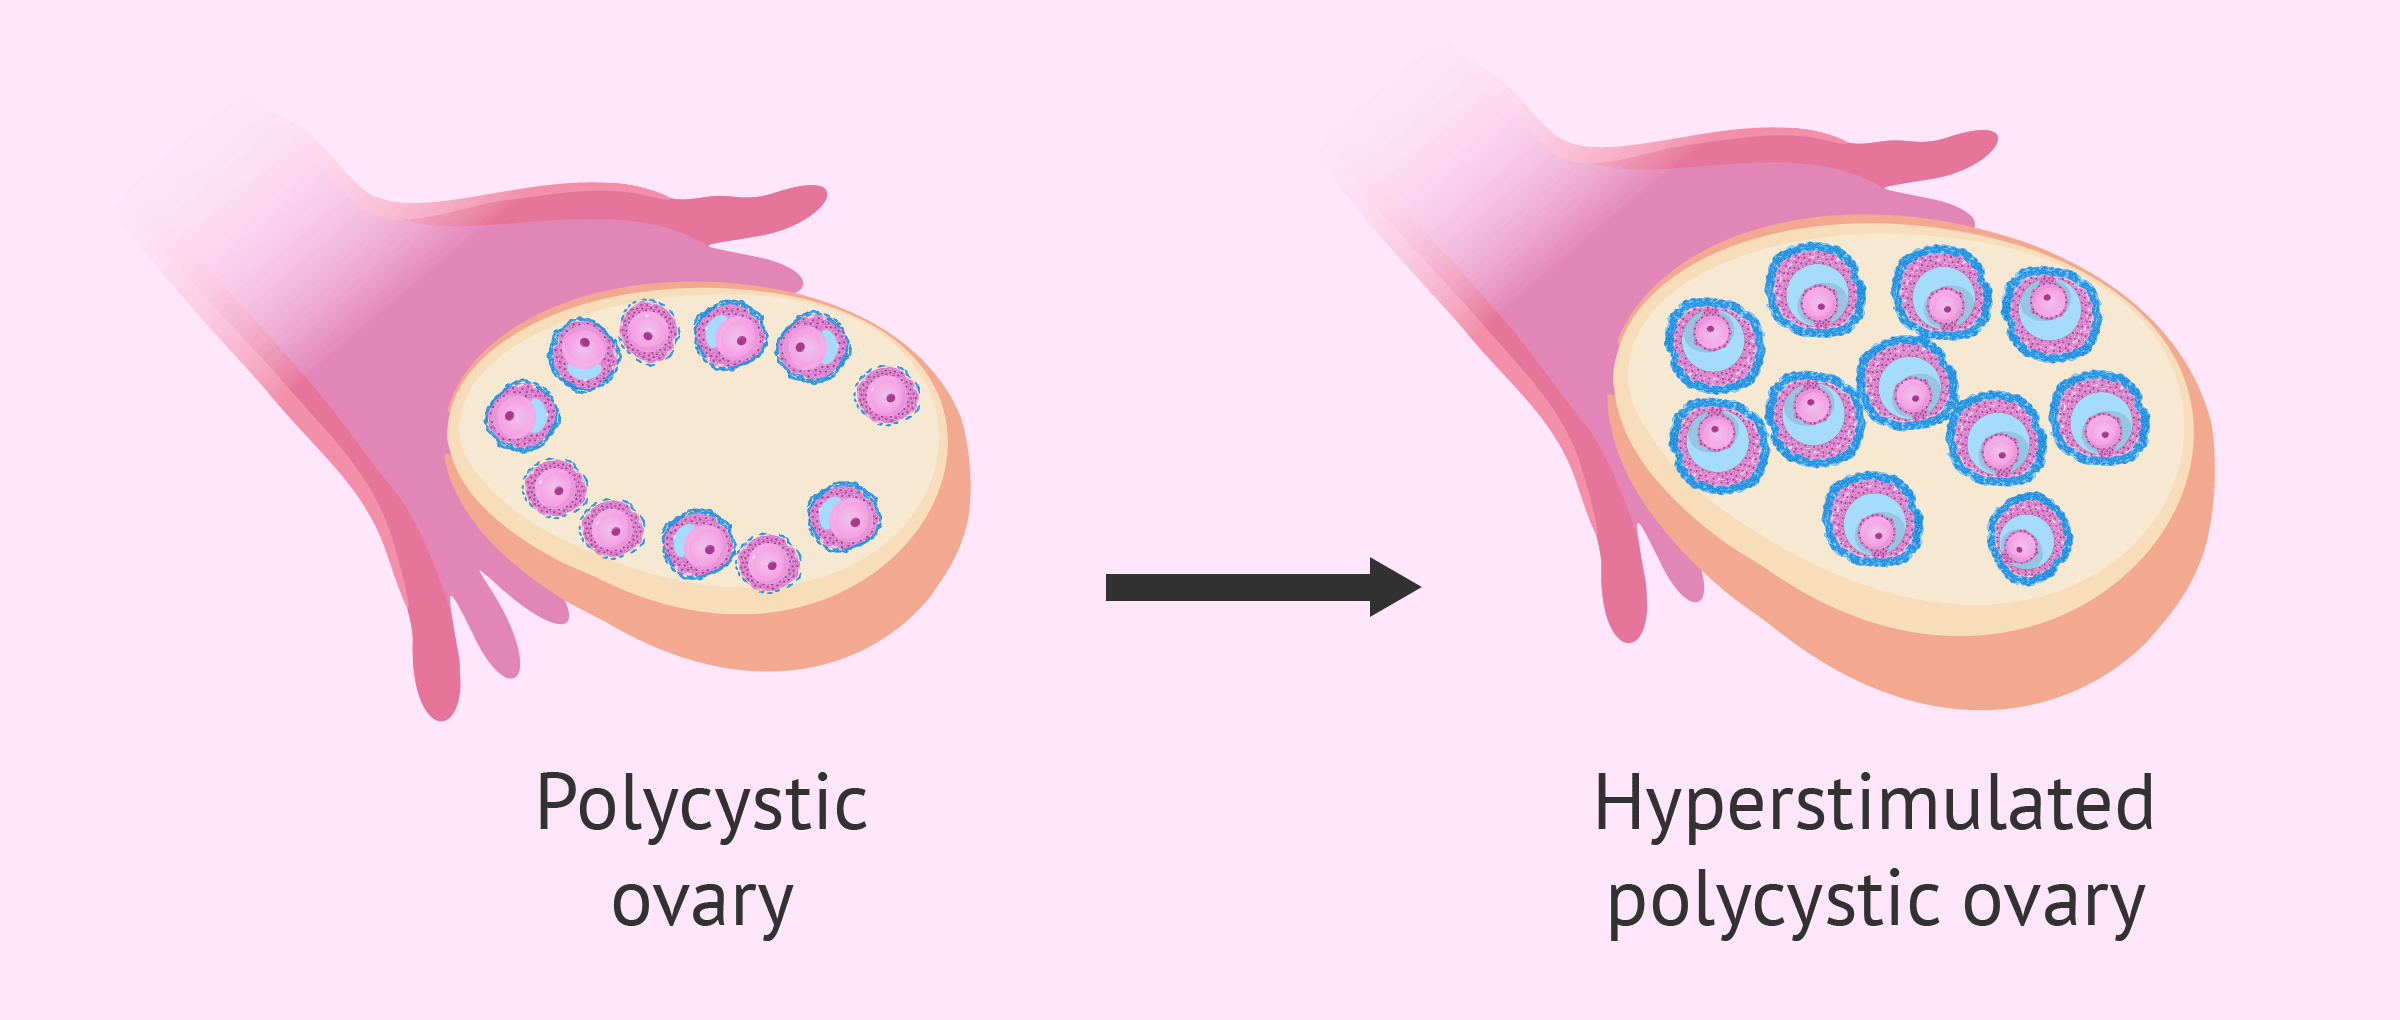 Como se cura el ovario poliquistico